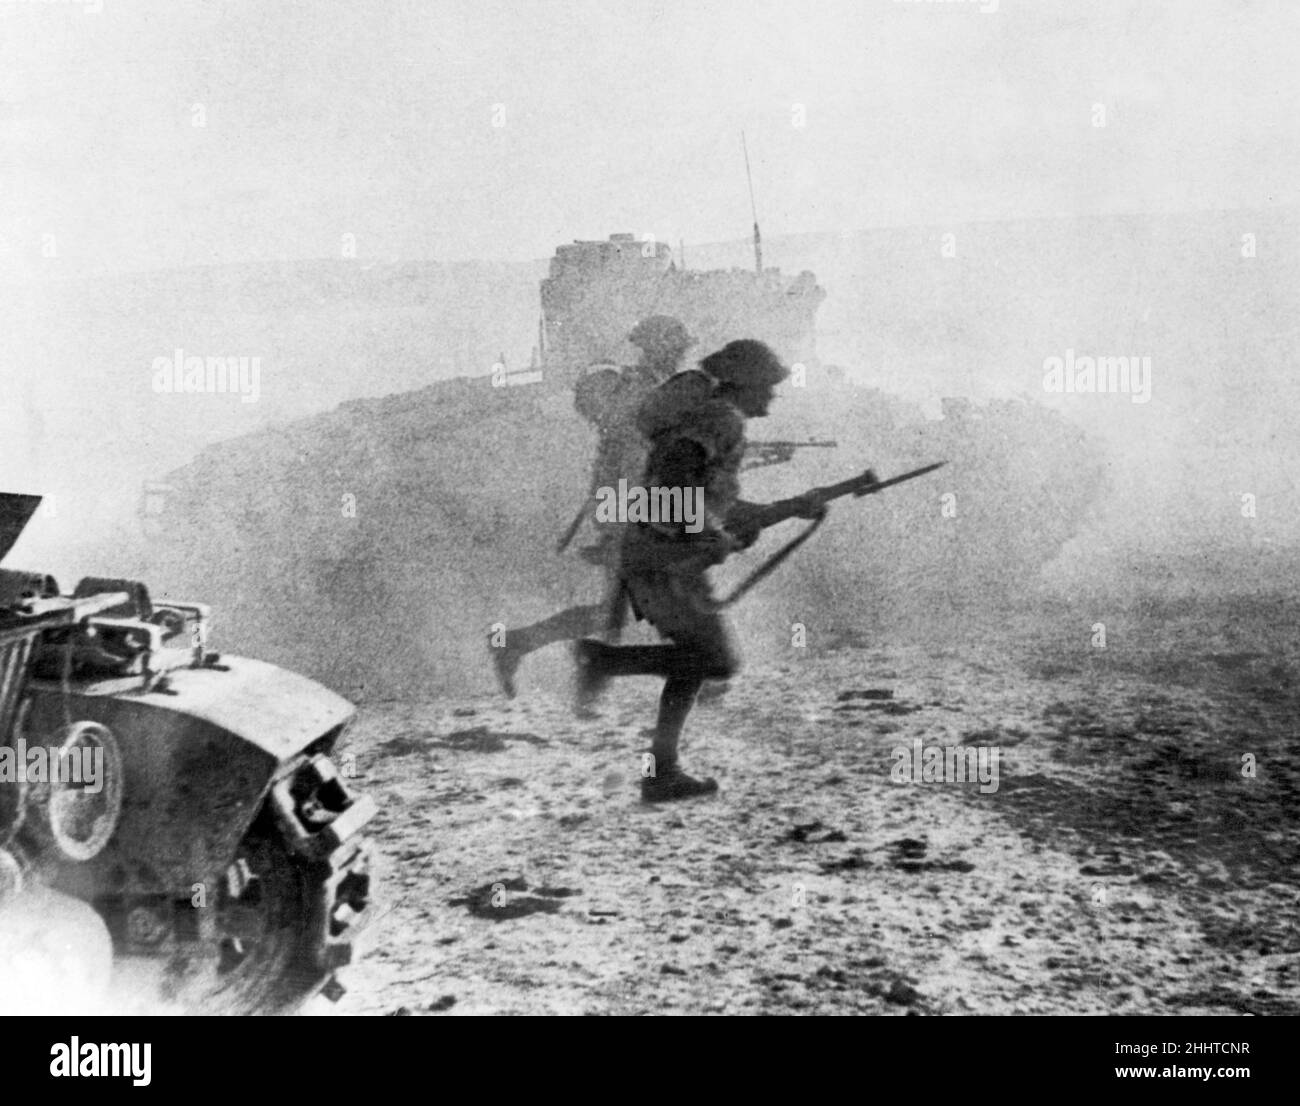 Schotten Wachen gehen in El Alamein in Aktion. Die Wachen bewegen sich unter dem Schutz einer Rauchwand nach vorne und der Staub, der von den Tanks aufgestoßen wird. Juli 1942 Stockfoto